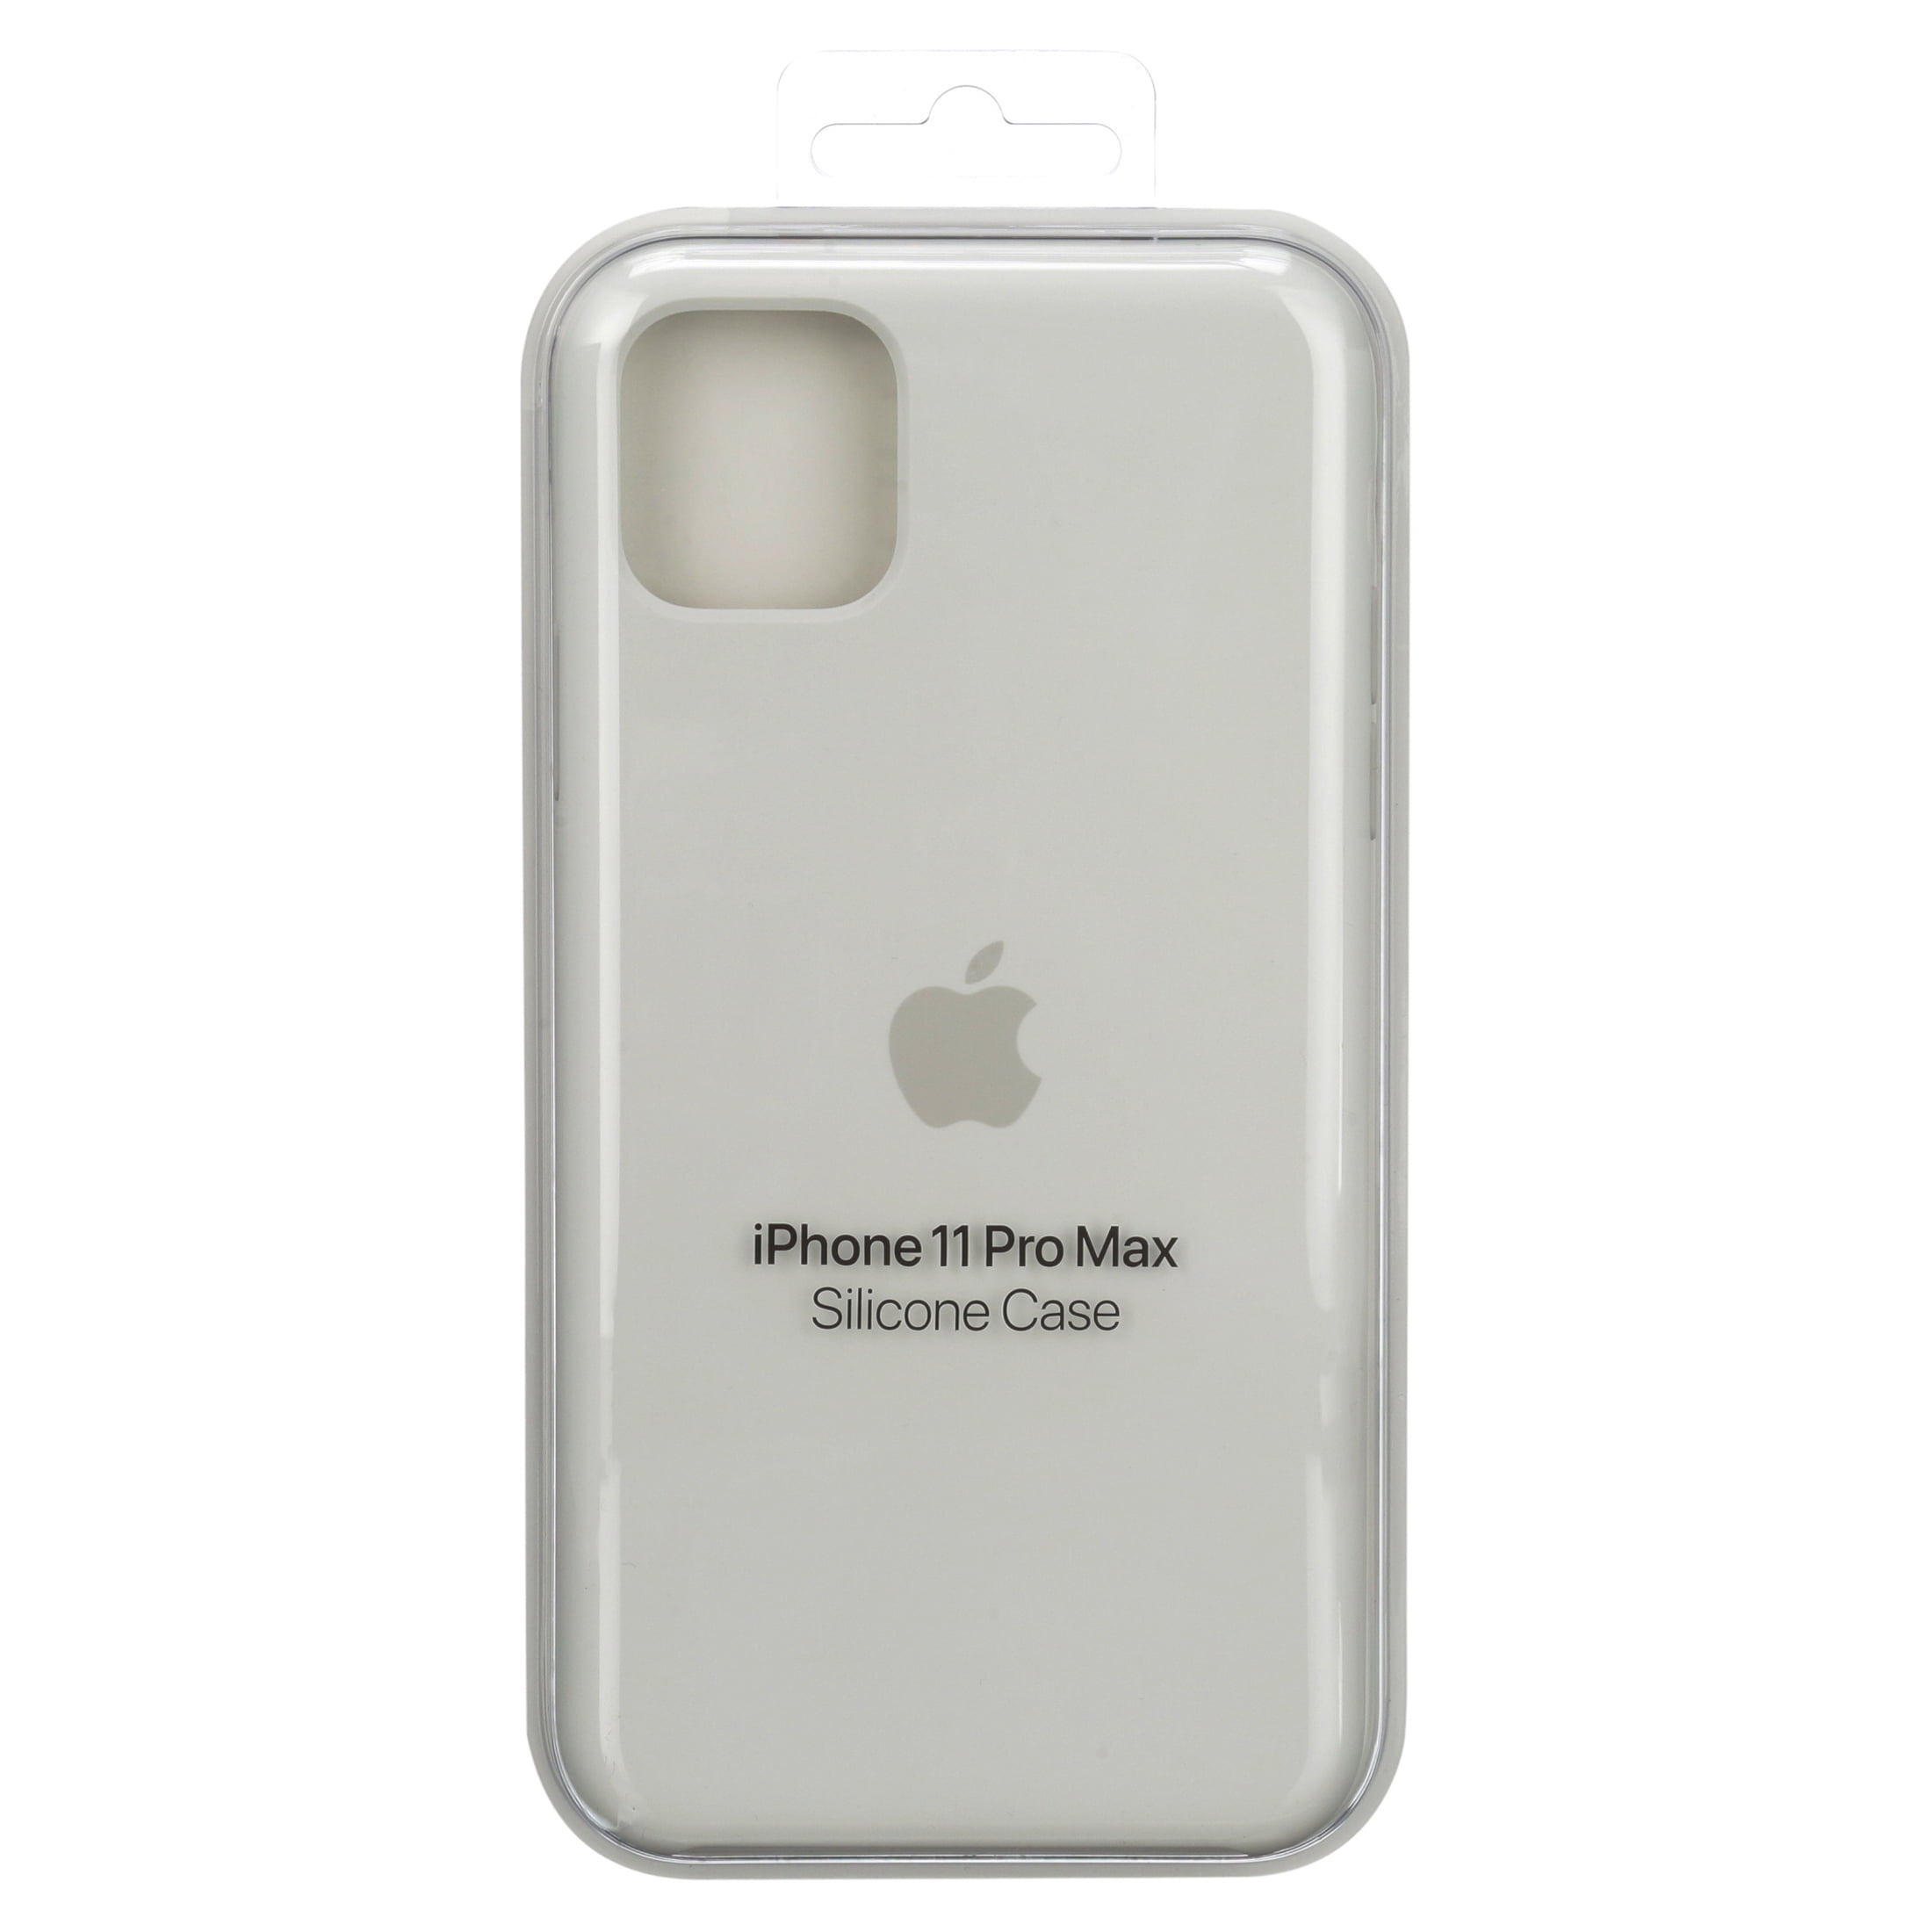 Iphone 11 Pro Max Silicone Case White Walmart Com Walmart Com